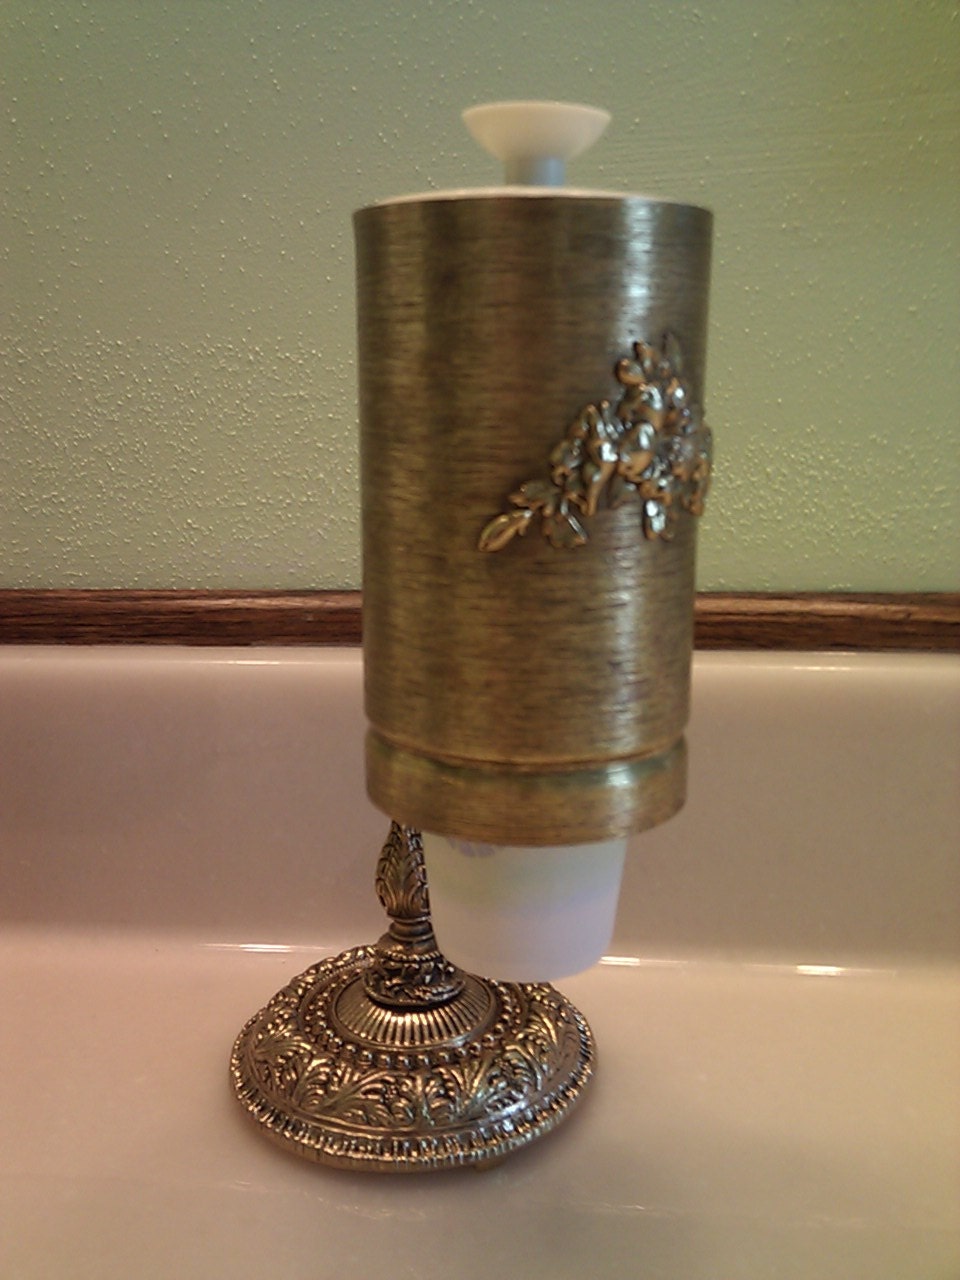 Vintage JuneyWCleaver cup by dispenser Gold vintage Holder Dispenser Bathroom  Cup Dixie